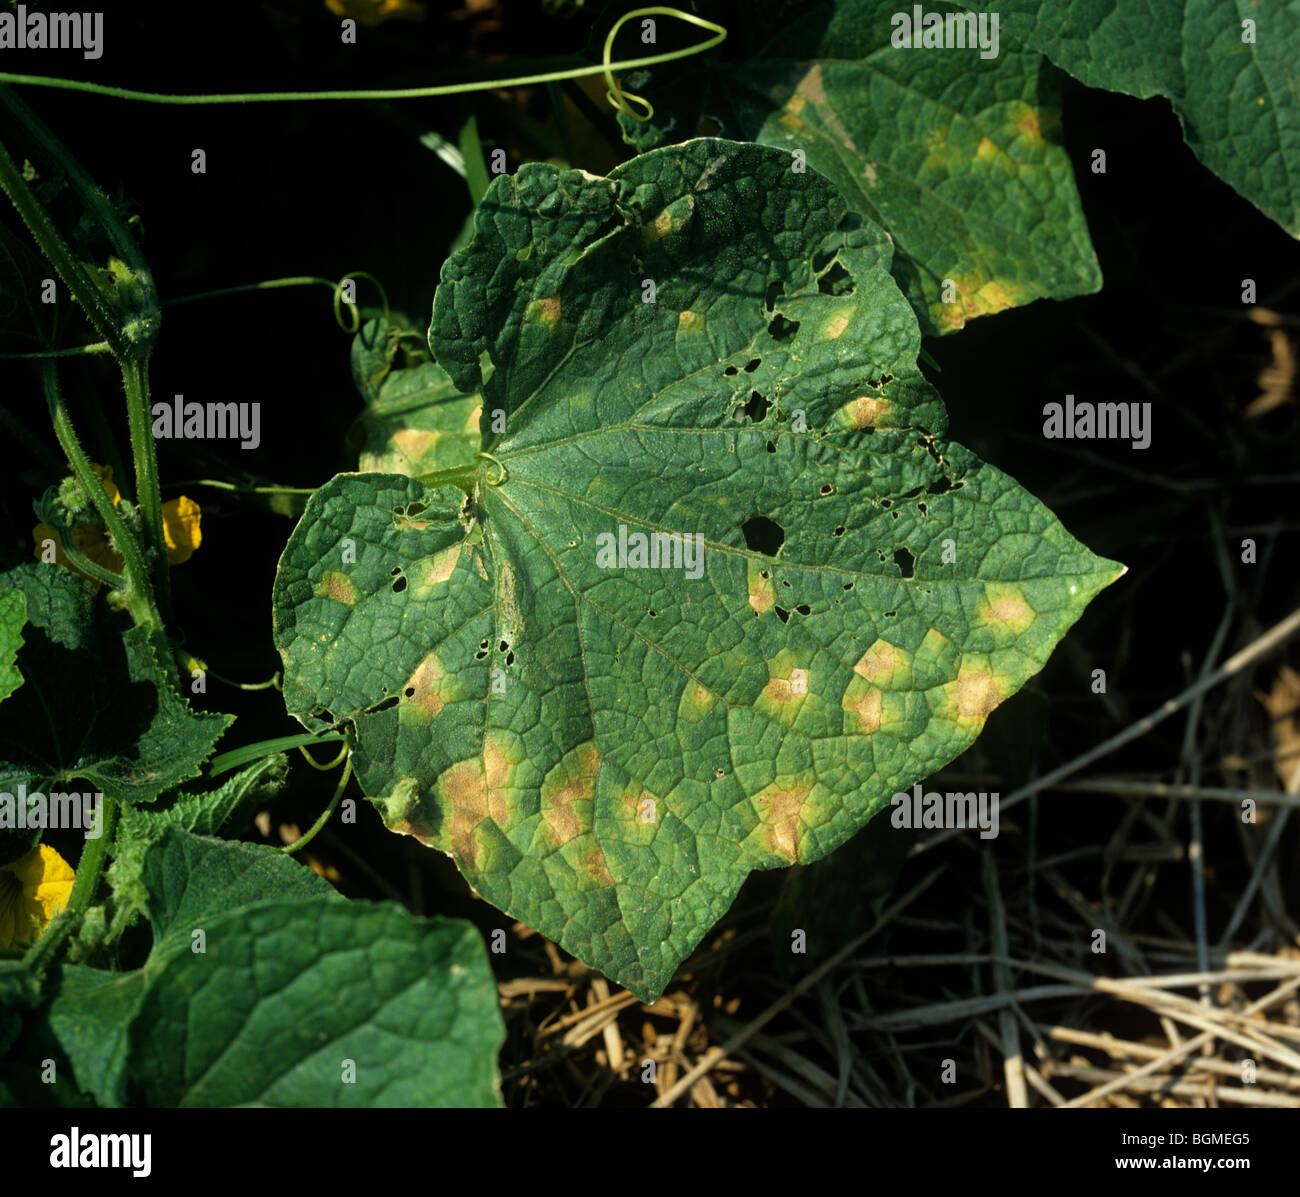 Downy mildew (Pseudoperonospora cubensis) symptoms on squash leaves, Thailand Stock Photo